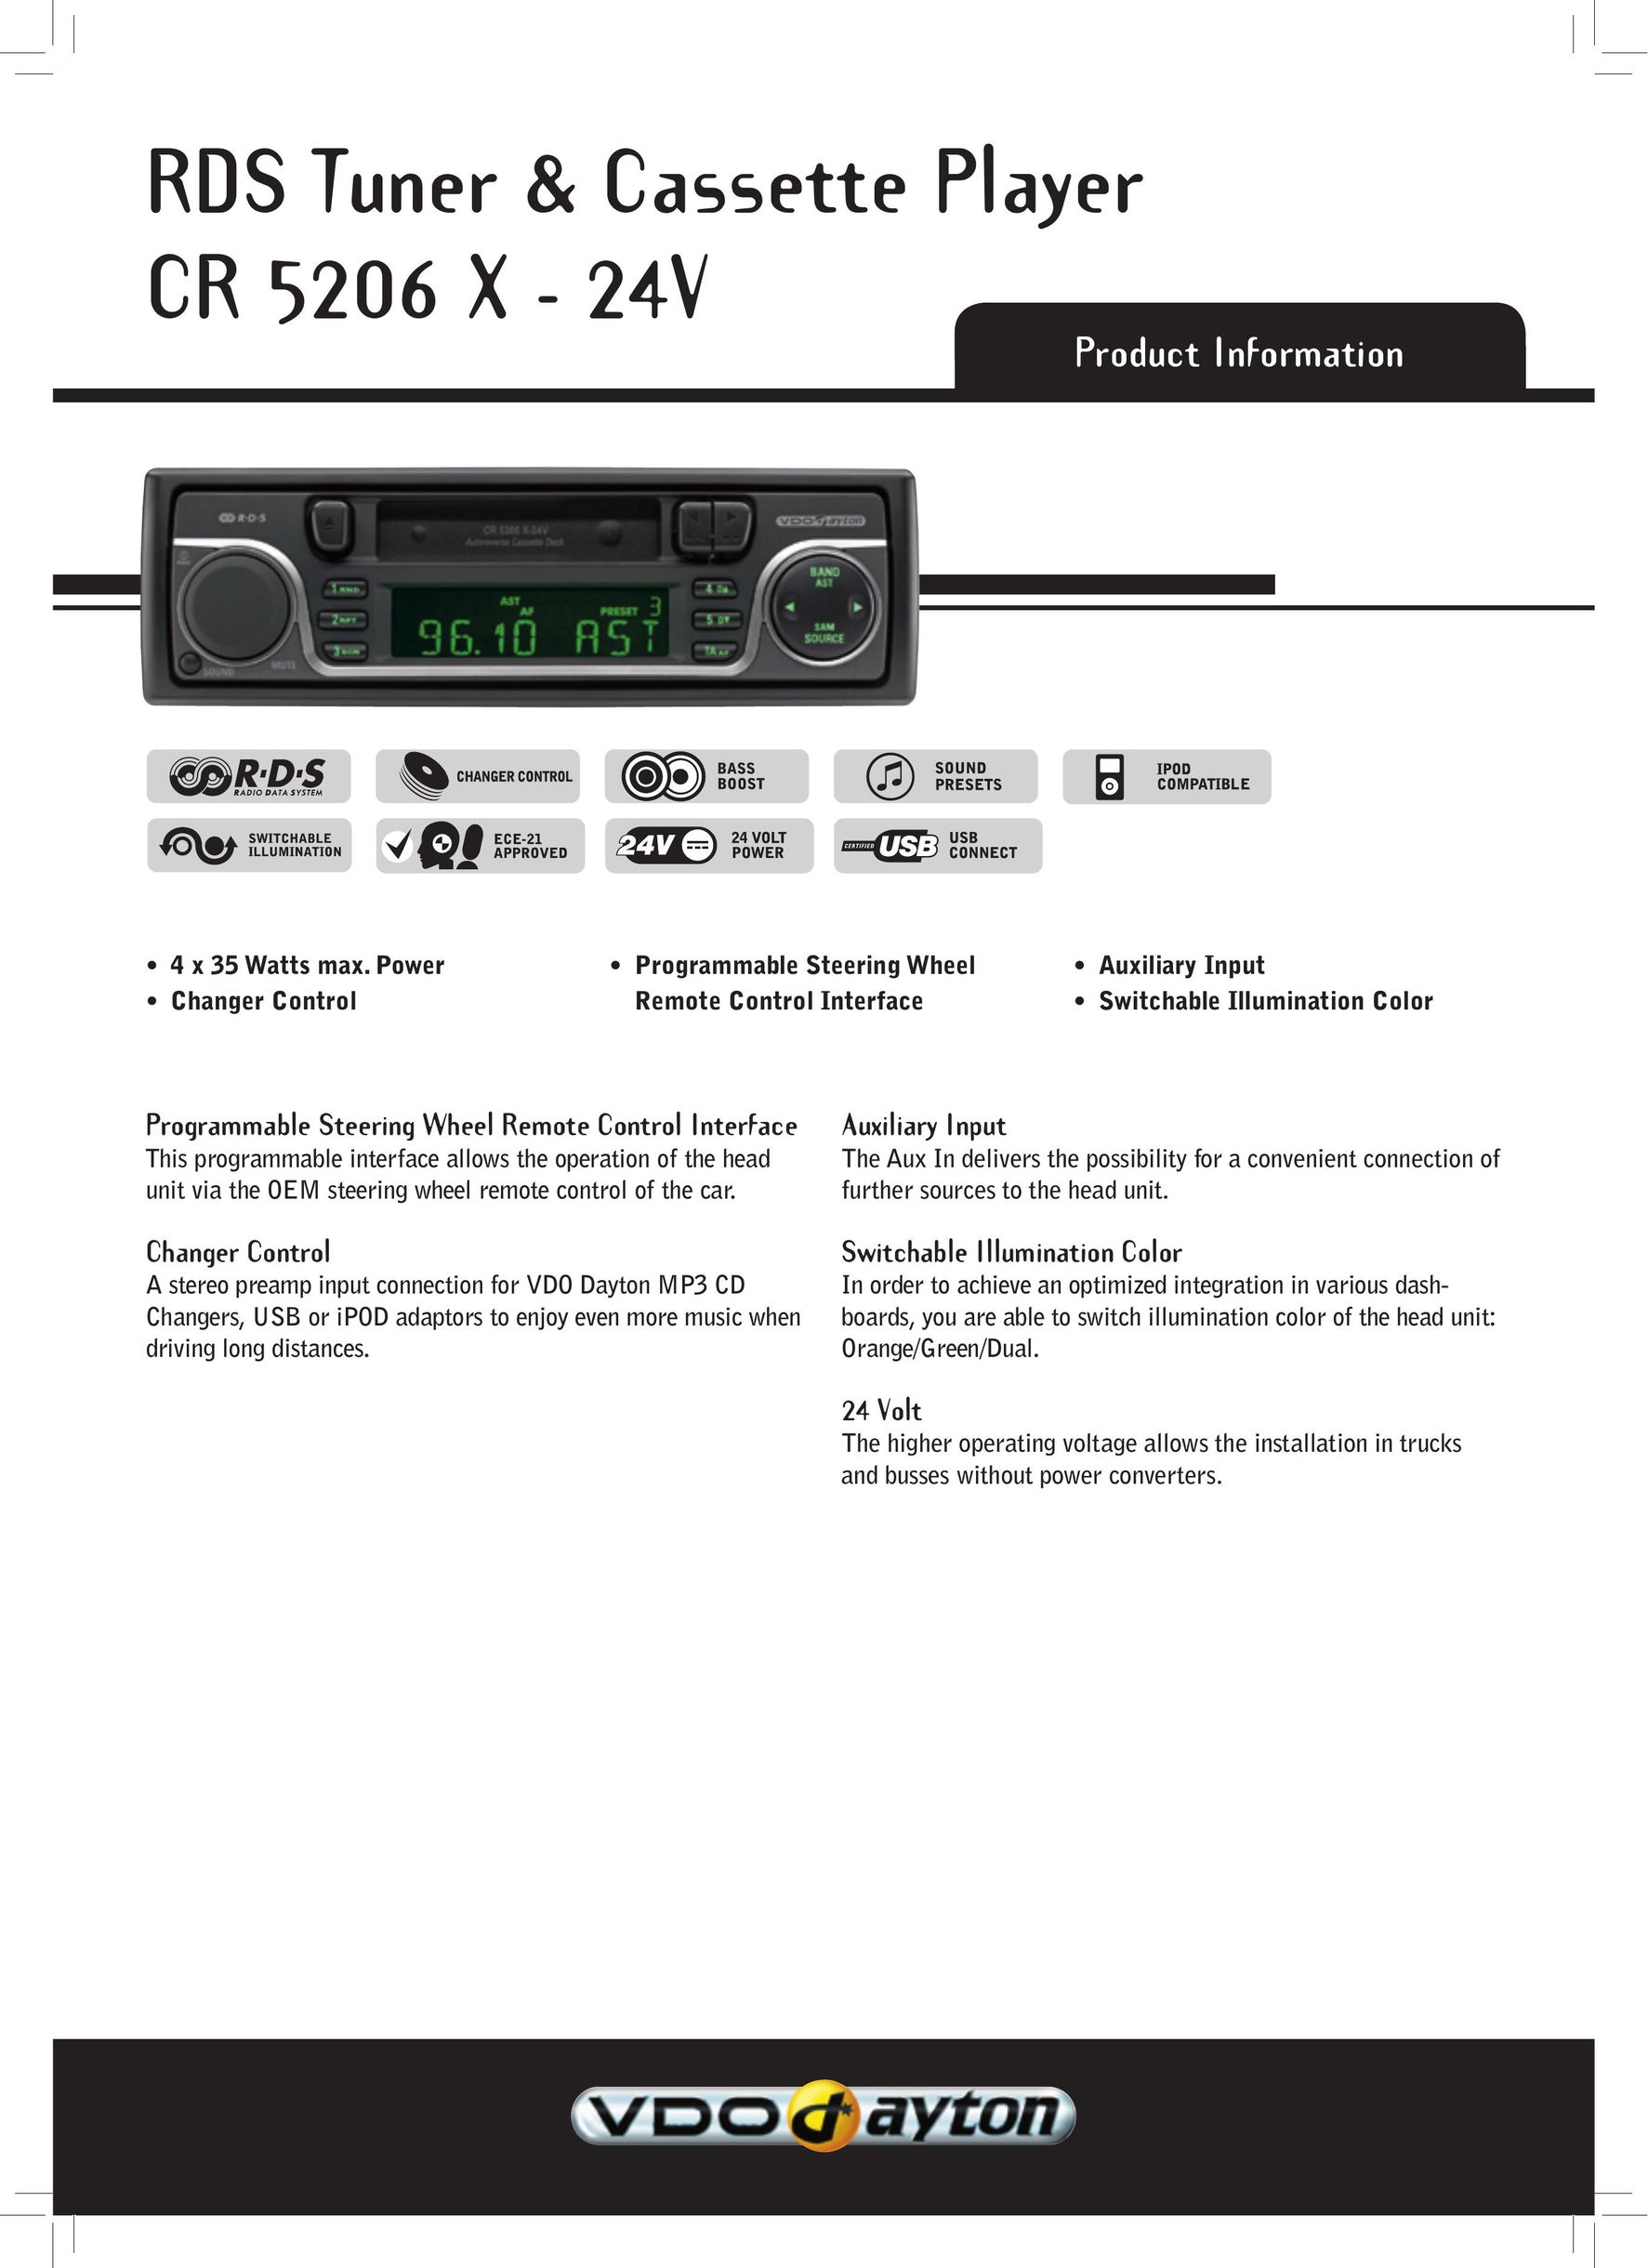 VDO Dayton CR 5206 X - 24V Cassette Player User Manual